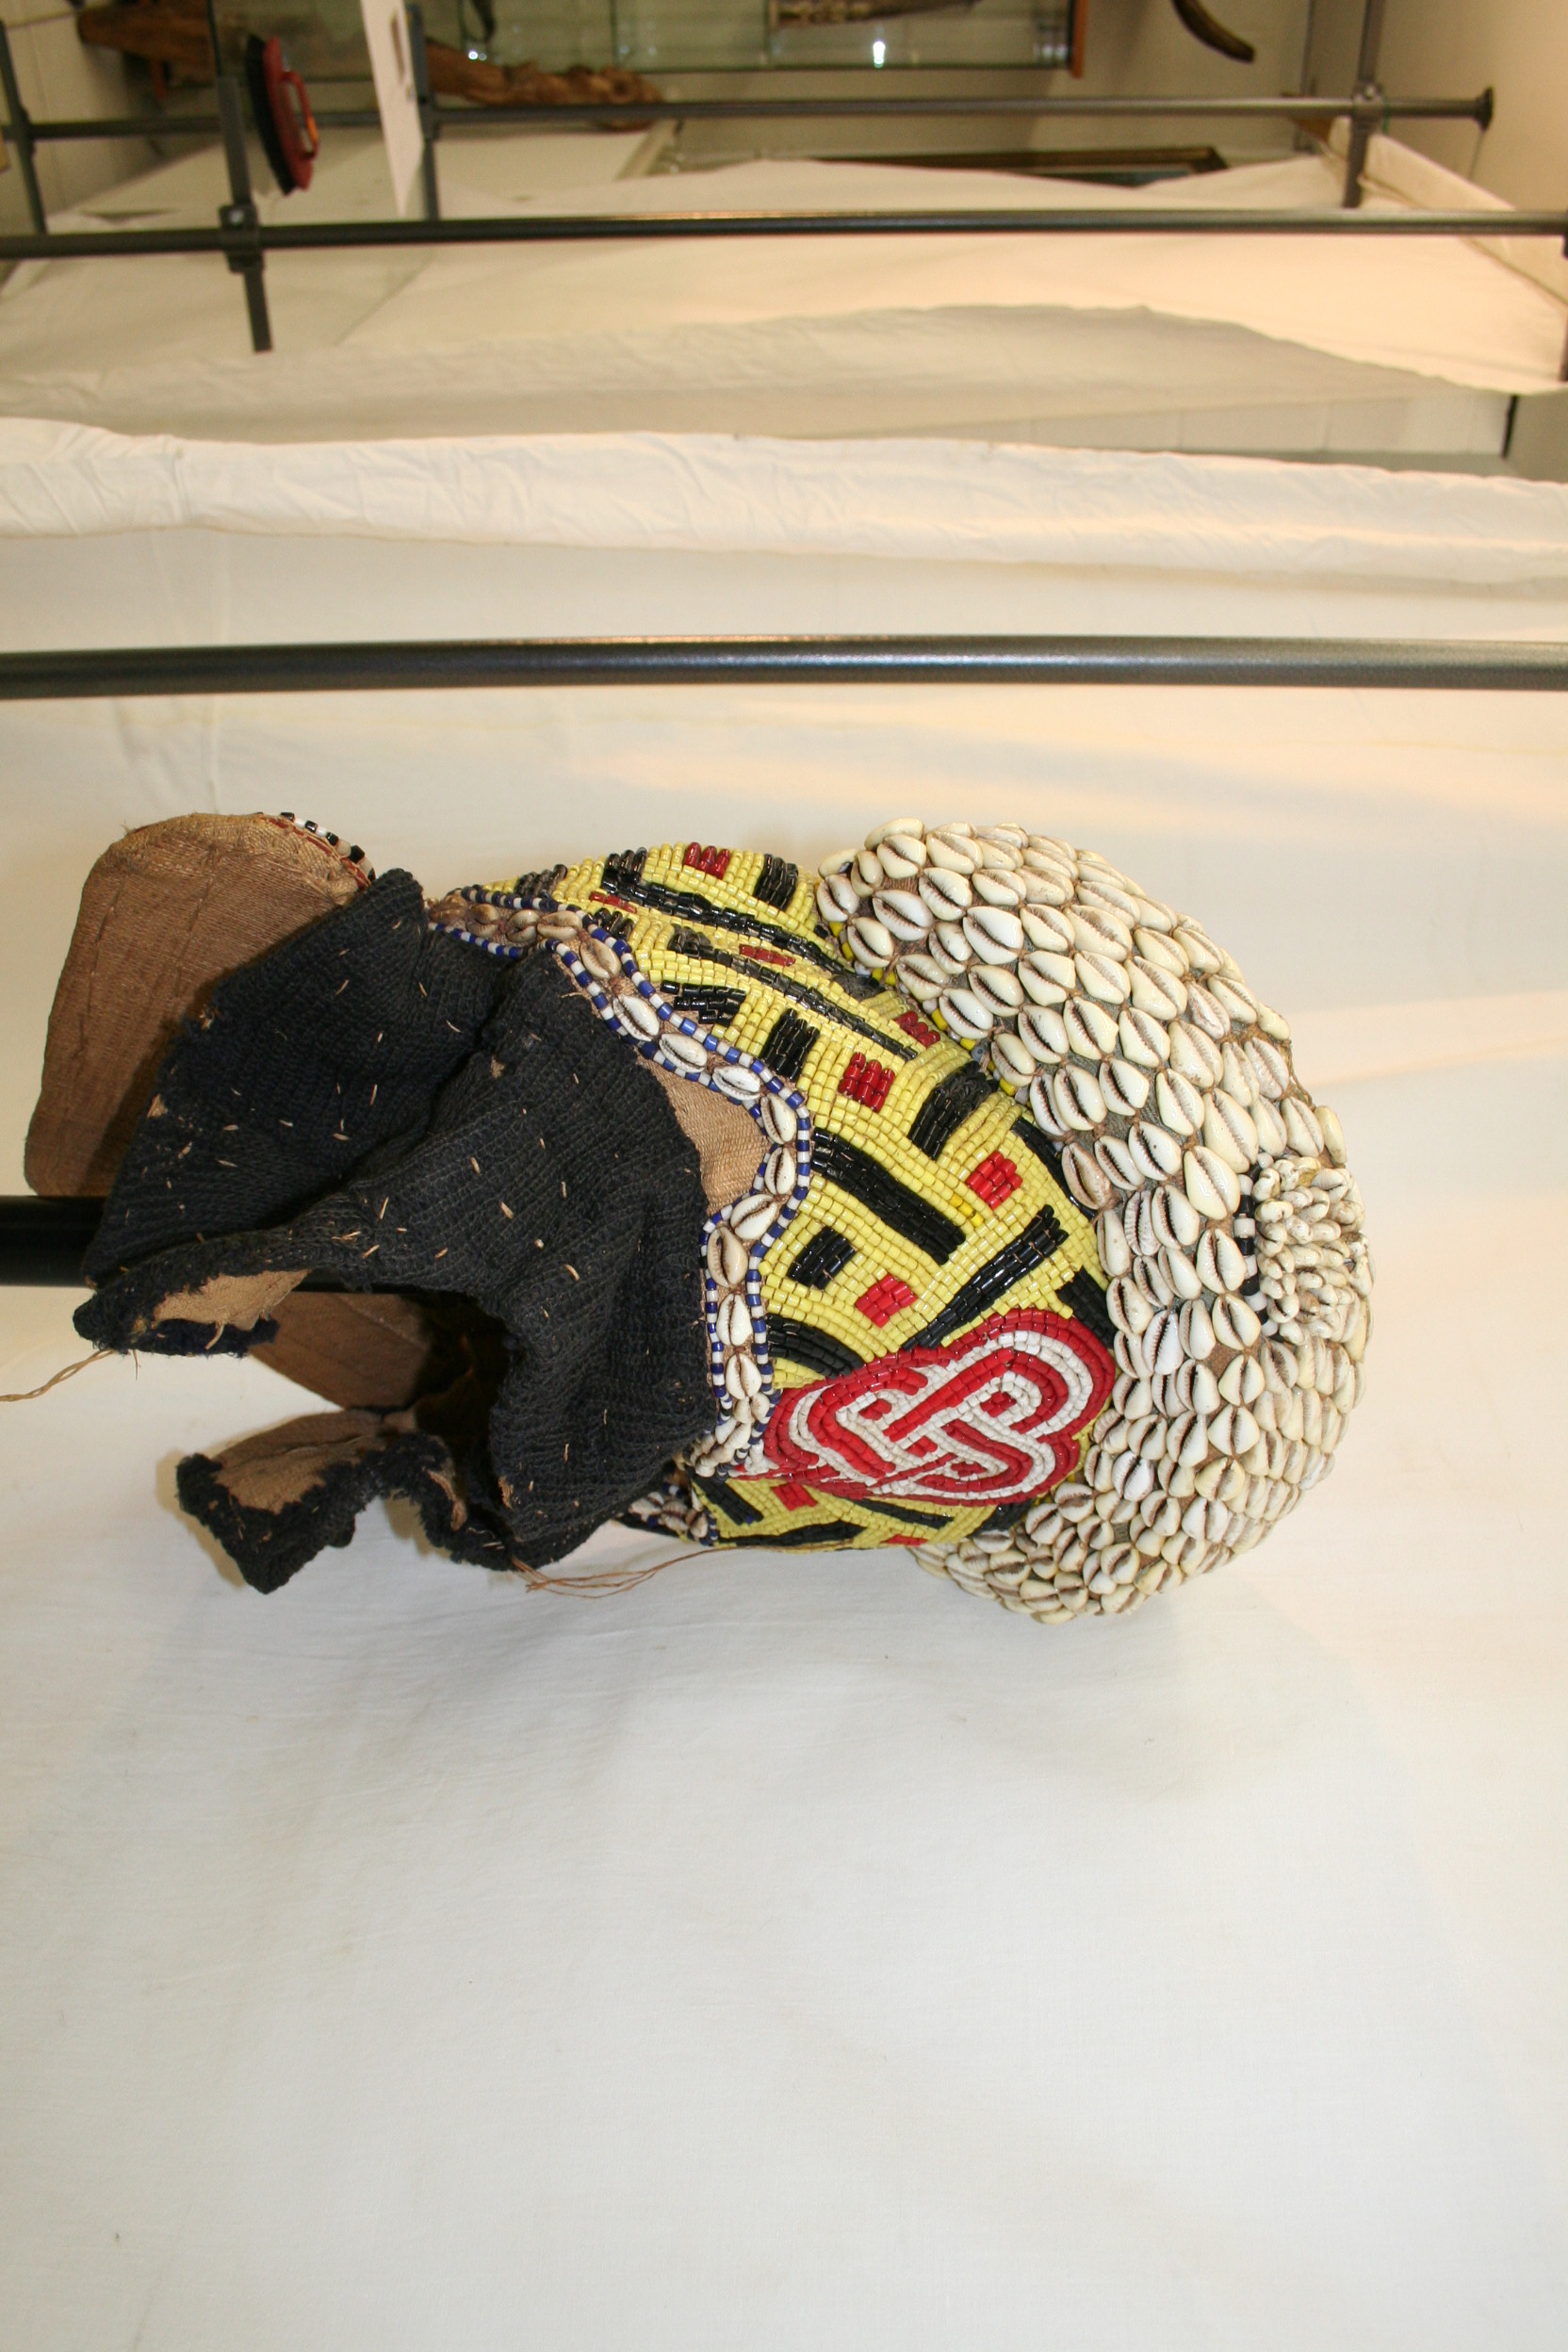 Kuba(masque tissus), d`afrique : rép.dem.du Congo, statuette Kuba(masque tissus), masque ancien africain Kuba(masque tissus), art du rép.dem.du Congo - Art Africain, collection privées Belgique. Statue africaine de la tribu des Kuba(masque tissus), provenant du rép.dem.du Congo, 1675:masque  Mwaash Ambooy bushoong bois,tissus ,fibres végétales,coquillages,
 perles.Il représente Wood,le fondateur des bushoong.milieu du 20eme sc.Le jour où un kum apoong s